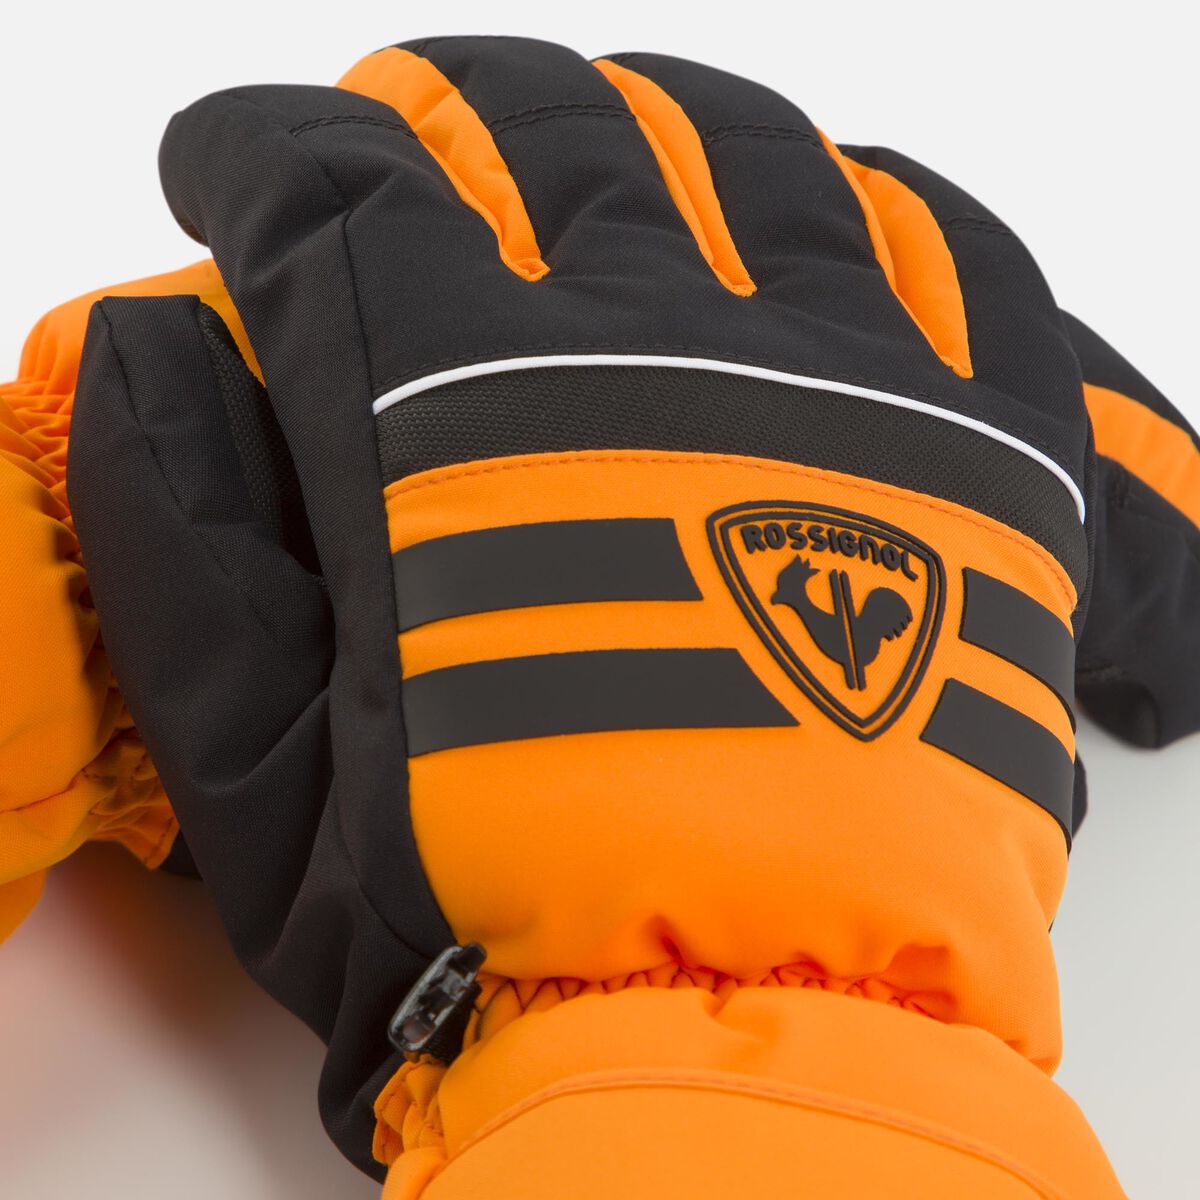 Rossignol Men's Tech IMP'R Ski Gloves Orange